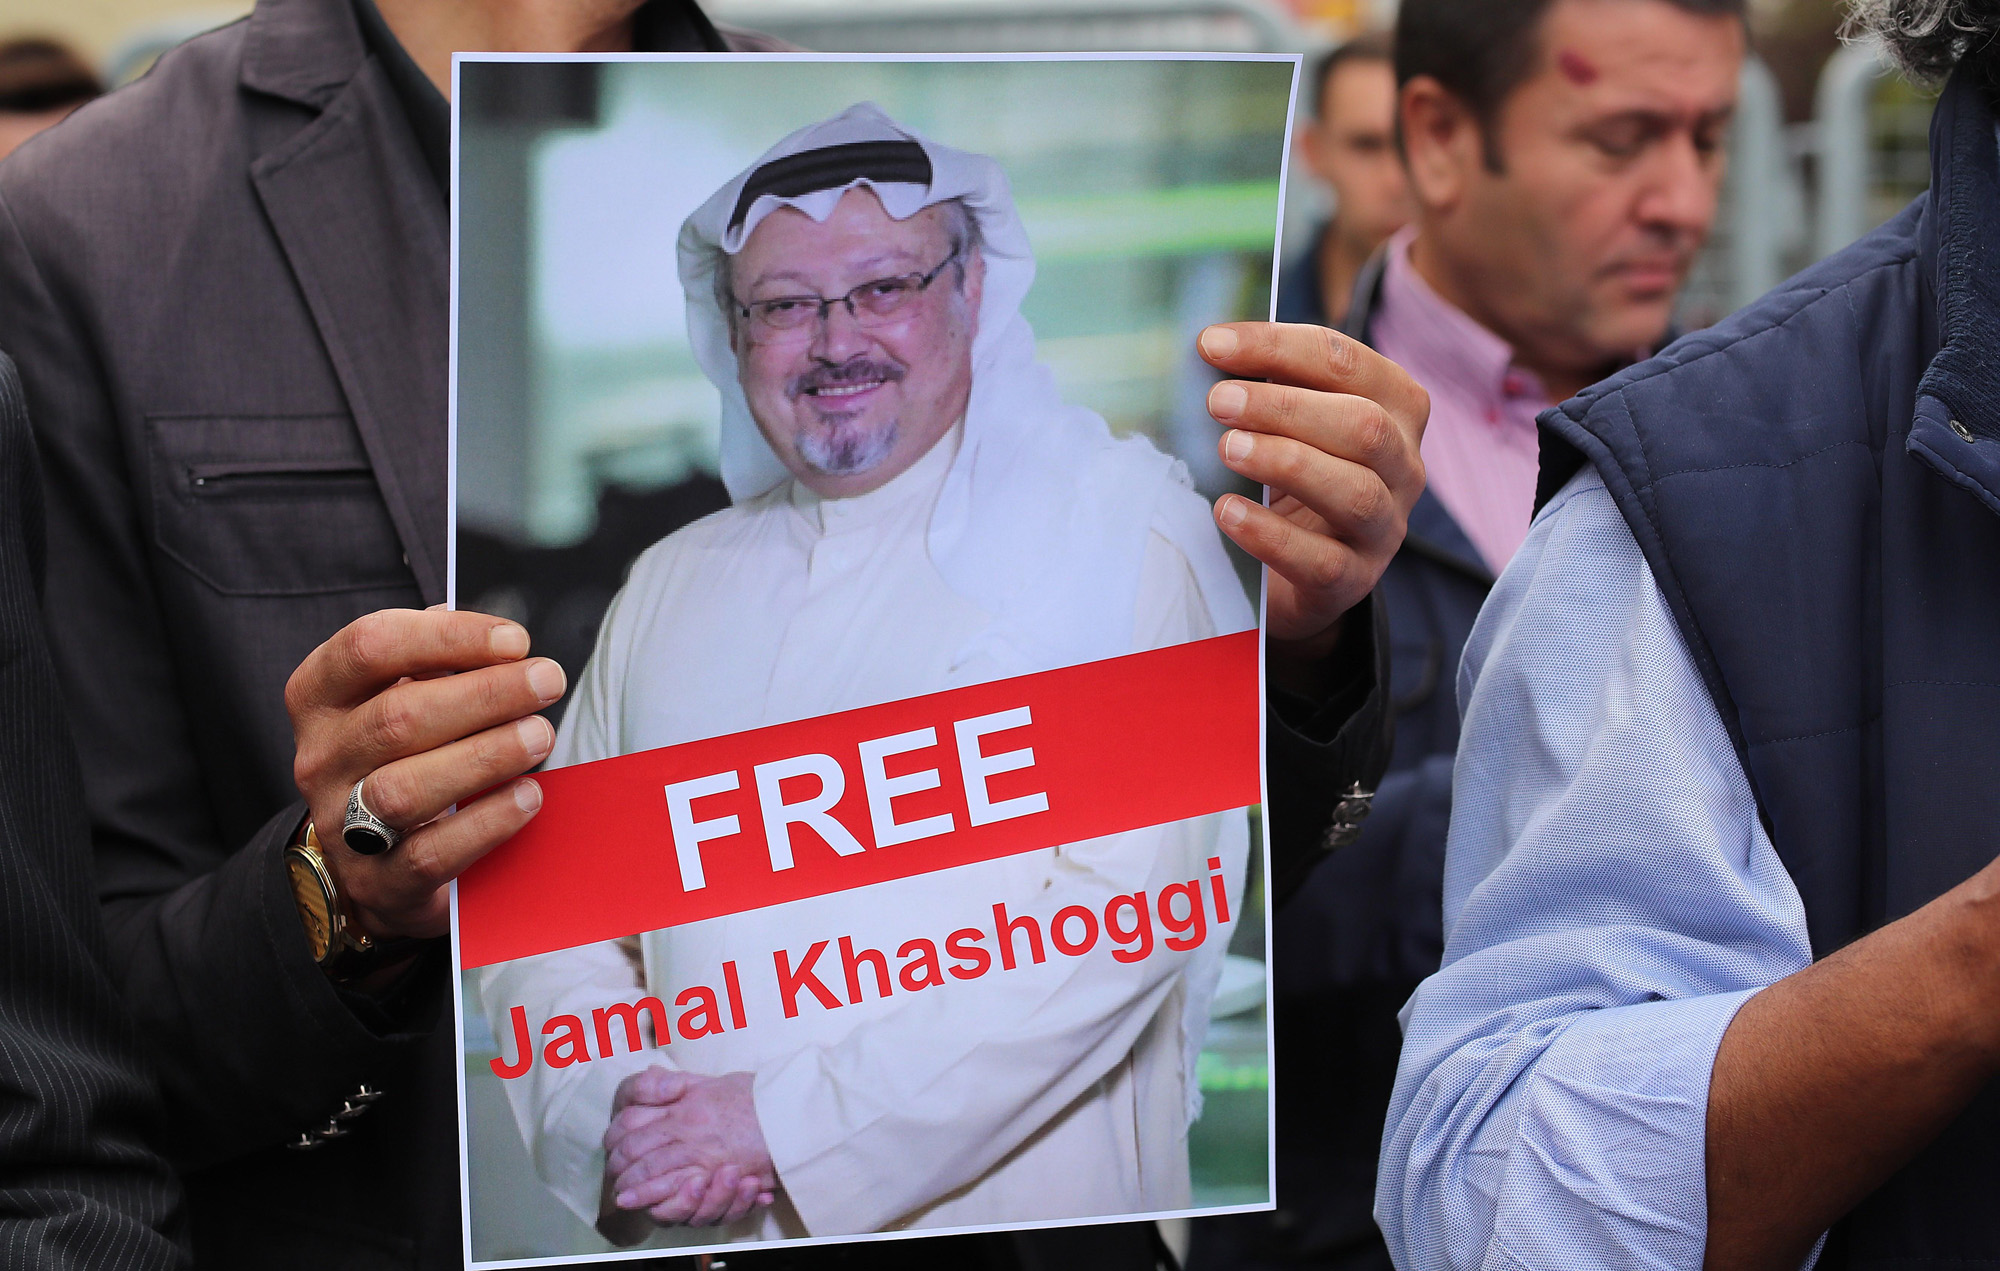 La ONU debe investigar el supuesto asesinato de Khashoggi, según varias ONG